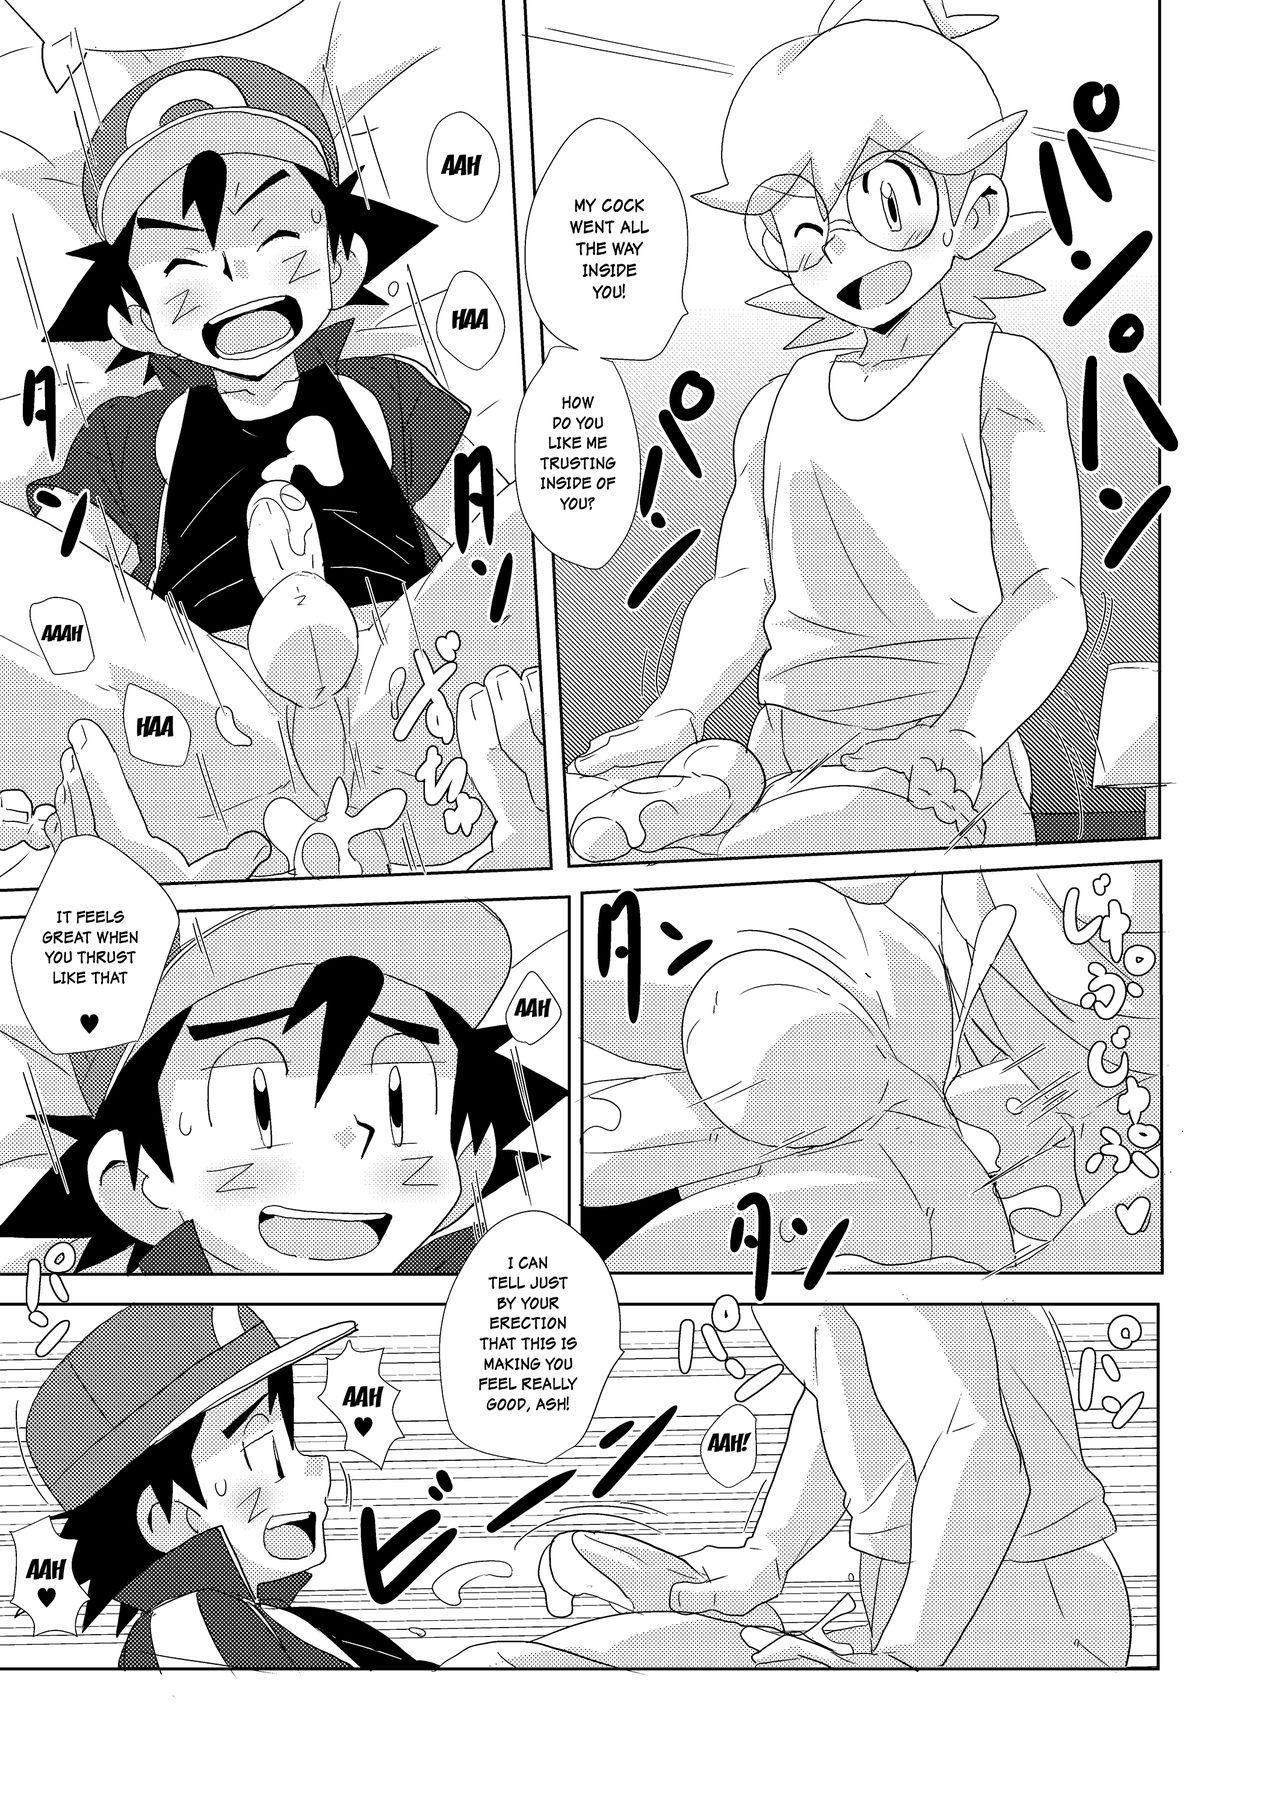 Her cream soda - Pokemon Uncensored - Page 11